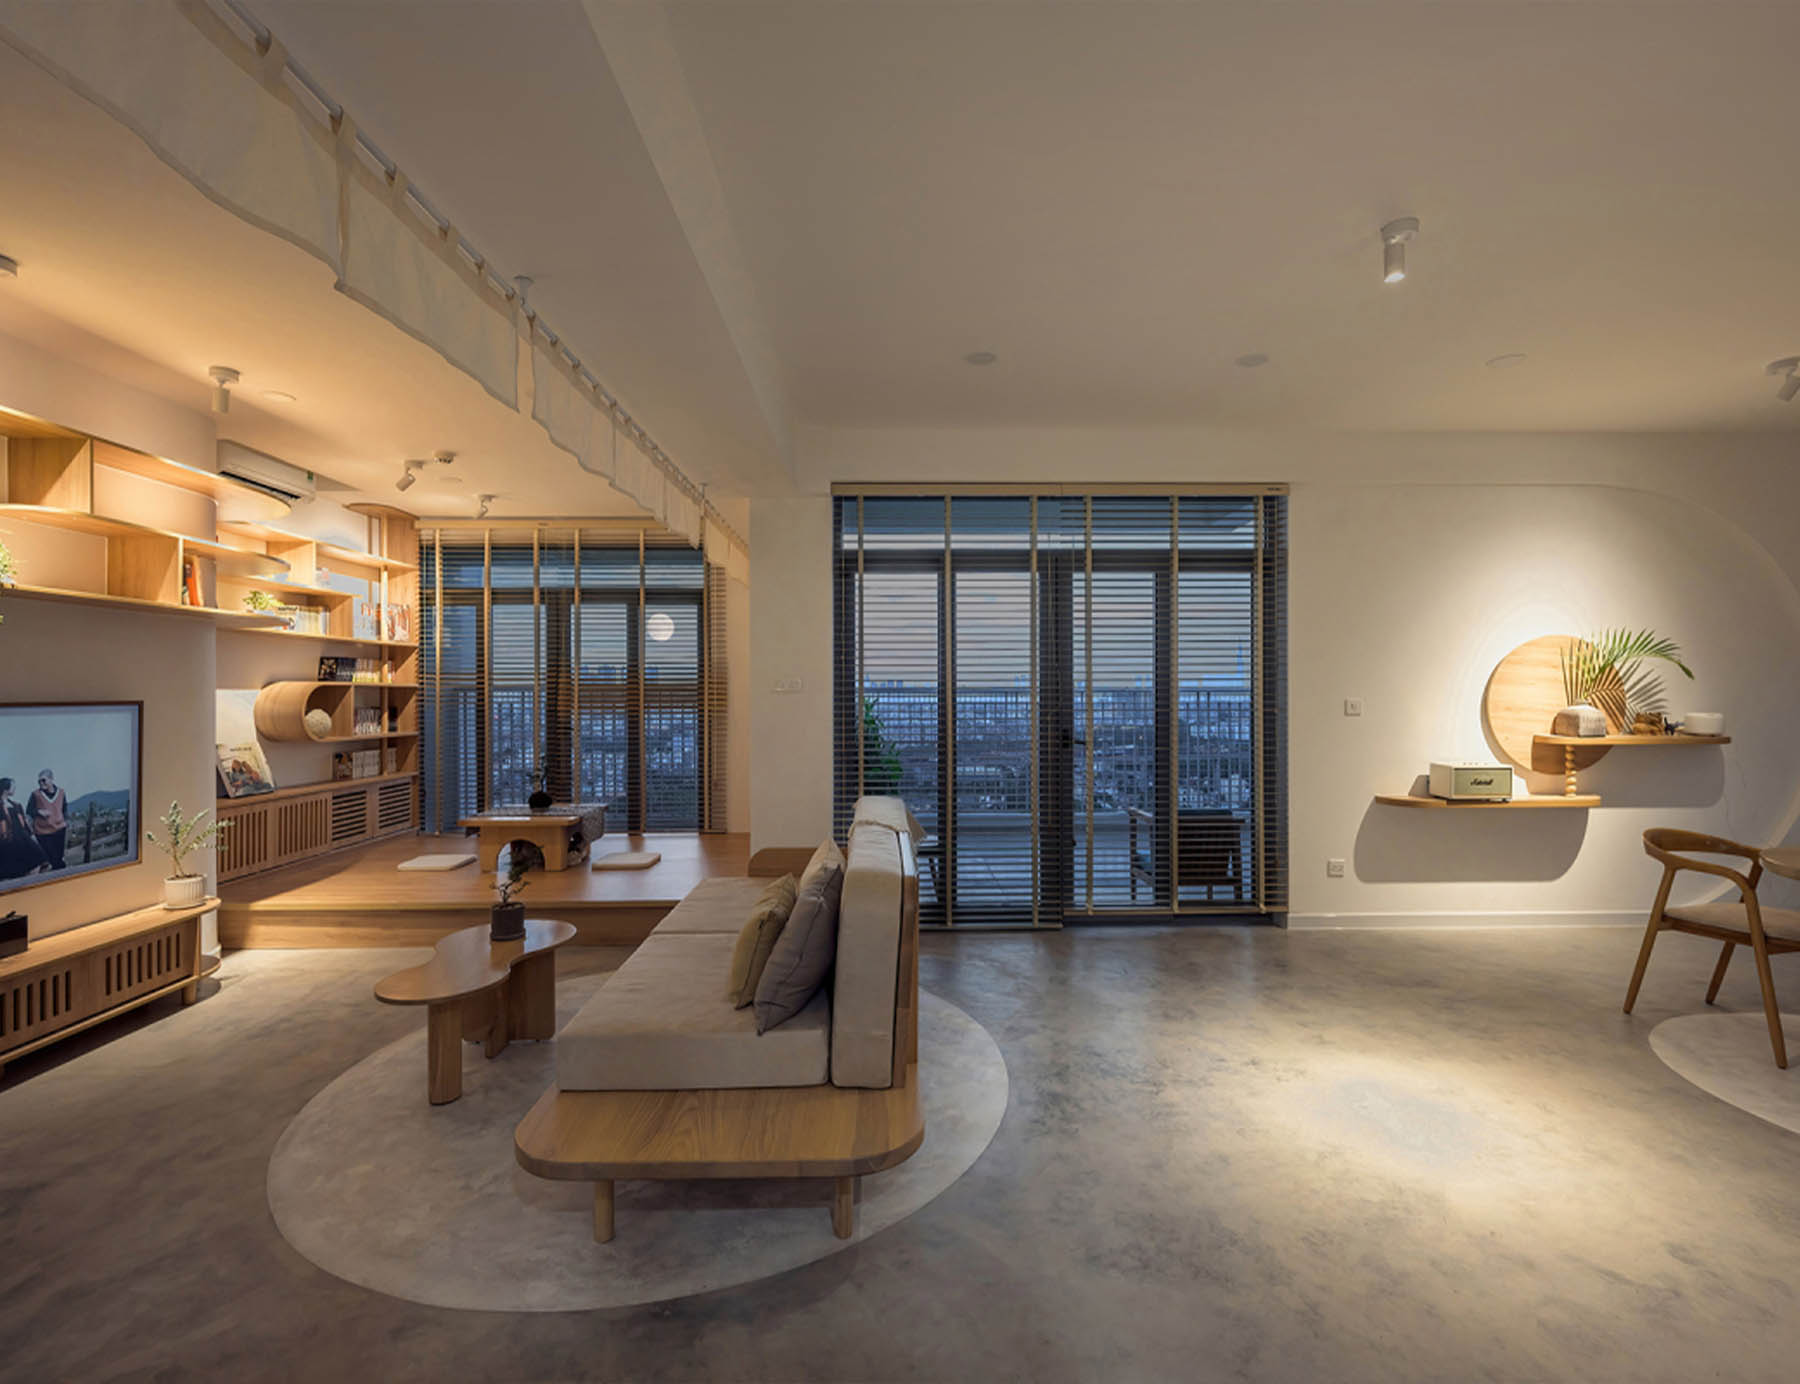 Không gian phòng khách được bày trí gọn gàng với những đồ nội thất được chọn lựa một cách tinh tế và tỉ mỉ